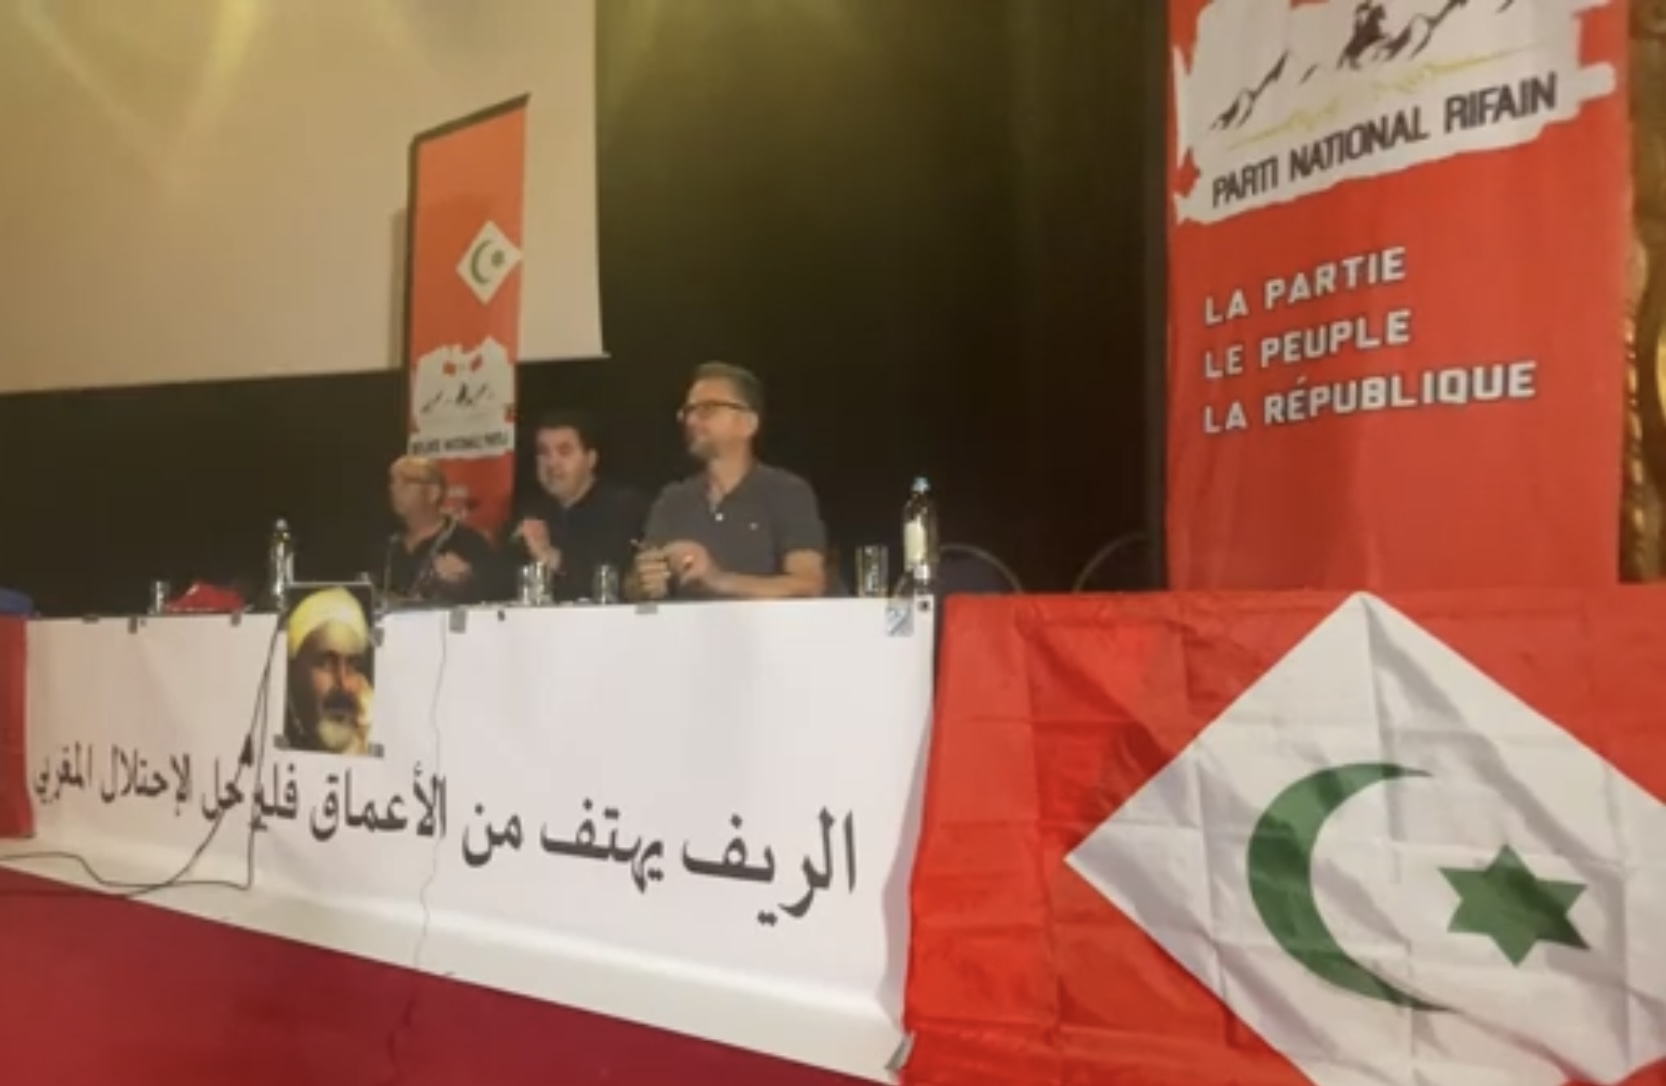 بلجيكا: الإعلان عن تأسيس حزب يطالب بانفصال الريف